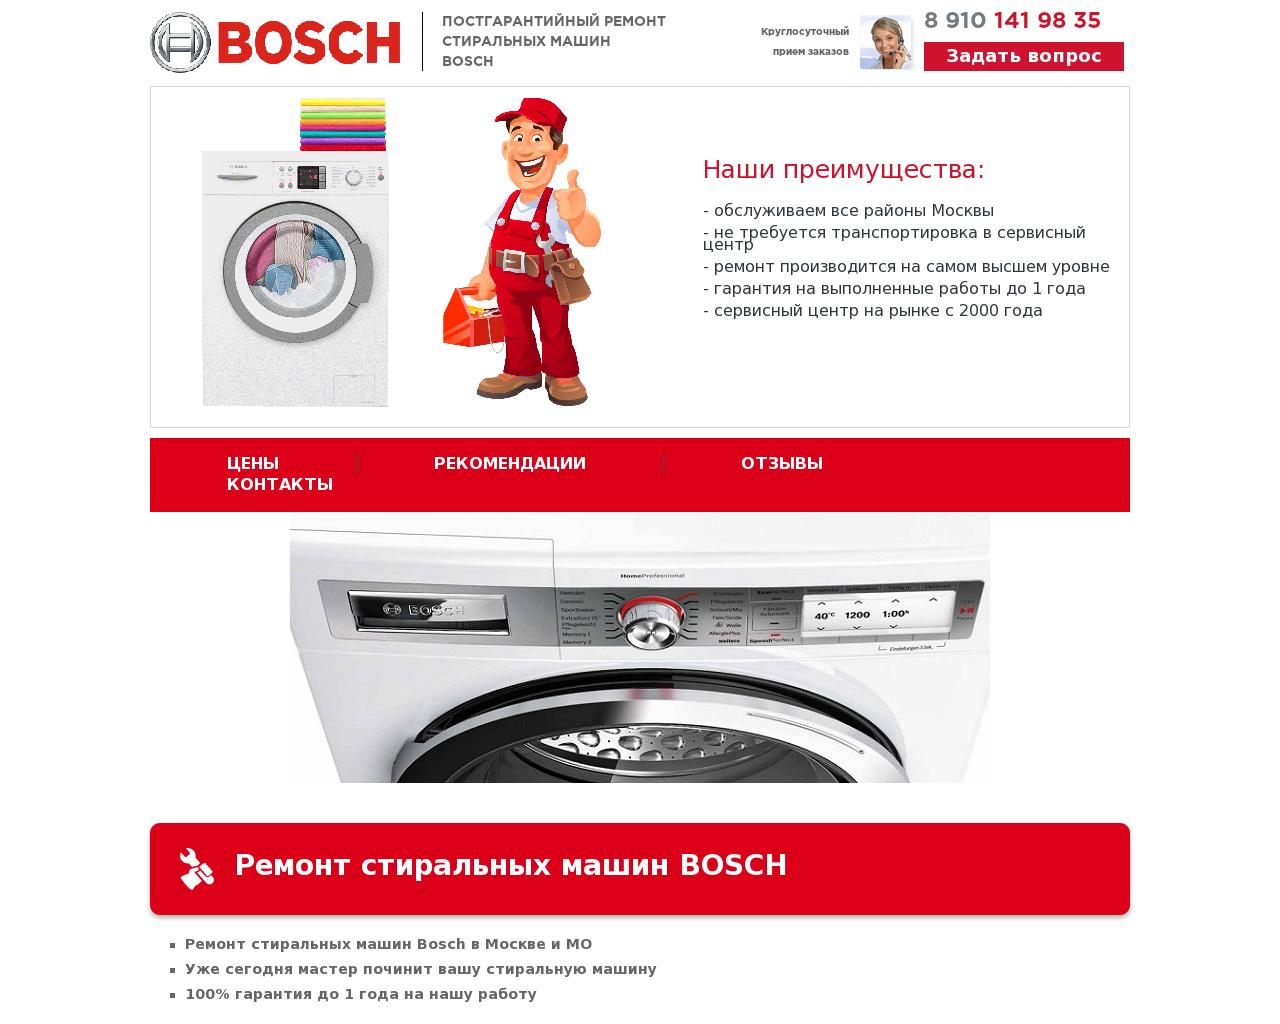 Изображение сайта remont-stiralnyh-mashin-bosch.ru в разрешении 1280x1024